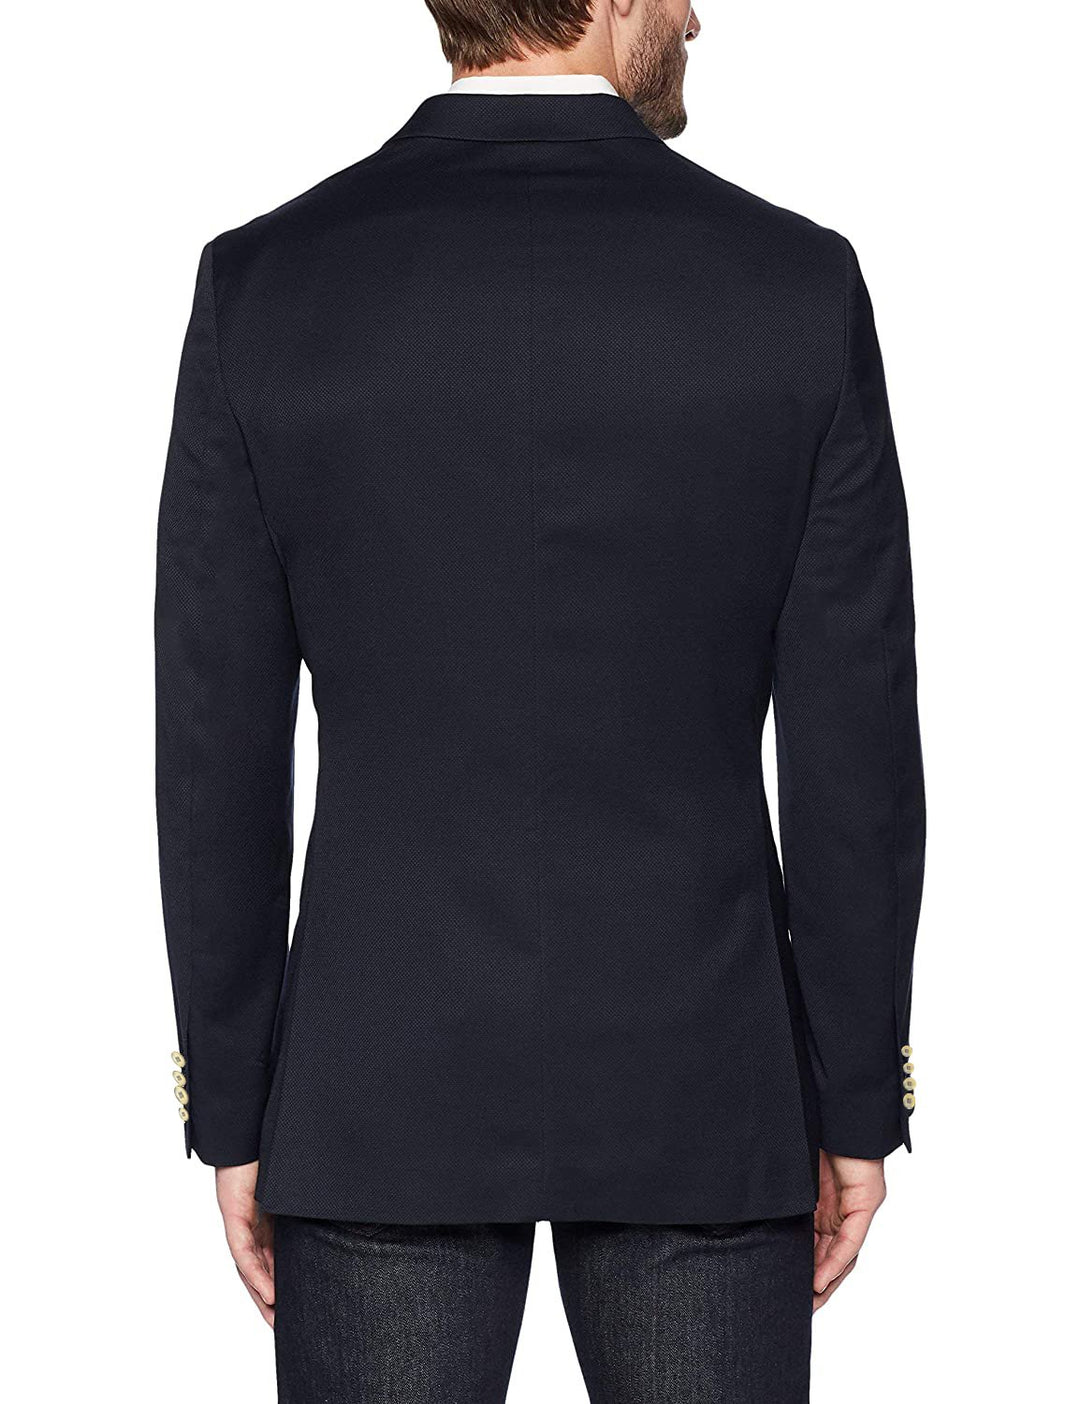 Adam Baker Men's Single Breasted Classic Fit Super 140'S 100% Wool Luxury Blazer/Sport Coat